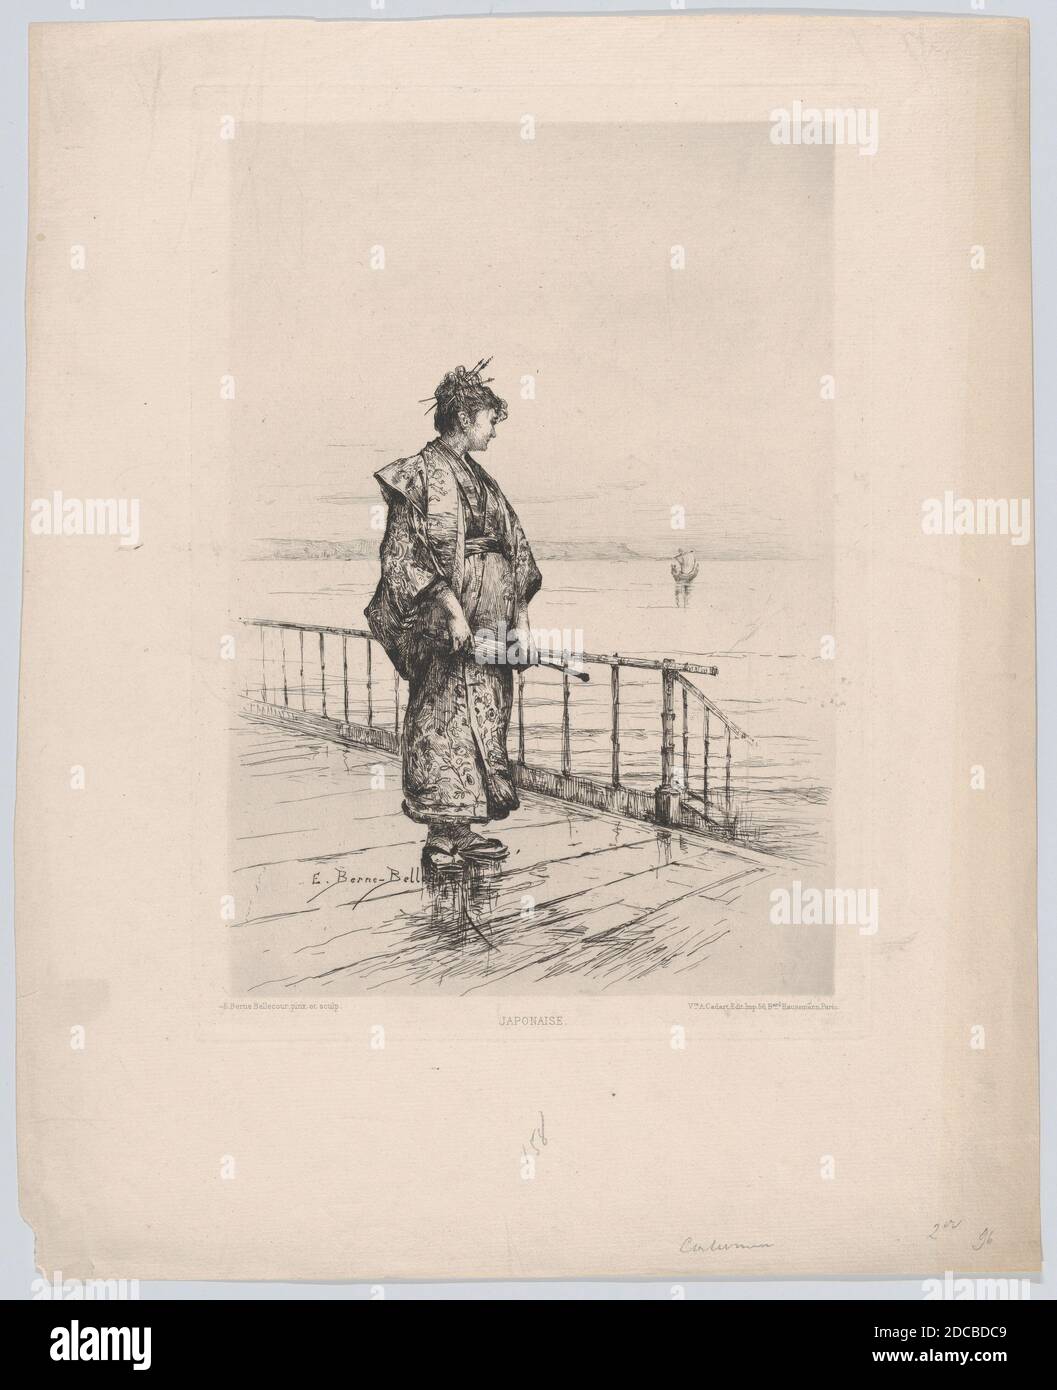 Japonaise, (Japanerin), 1877. Stockfoto